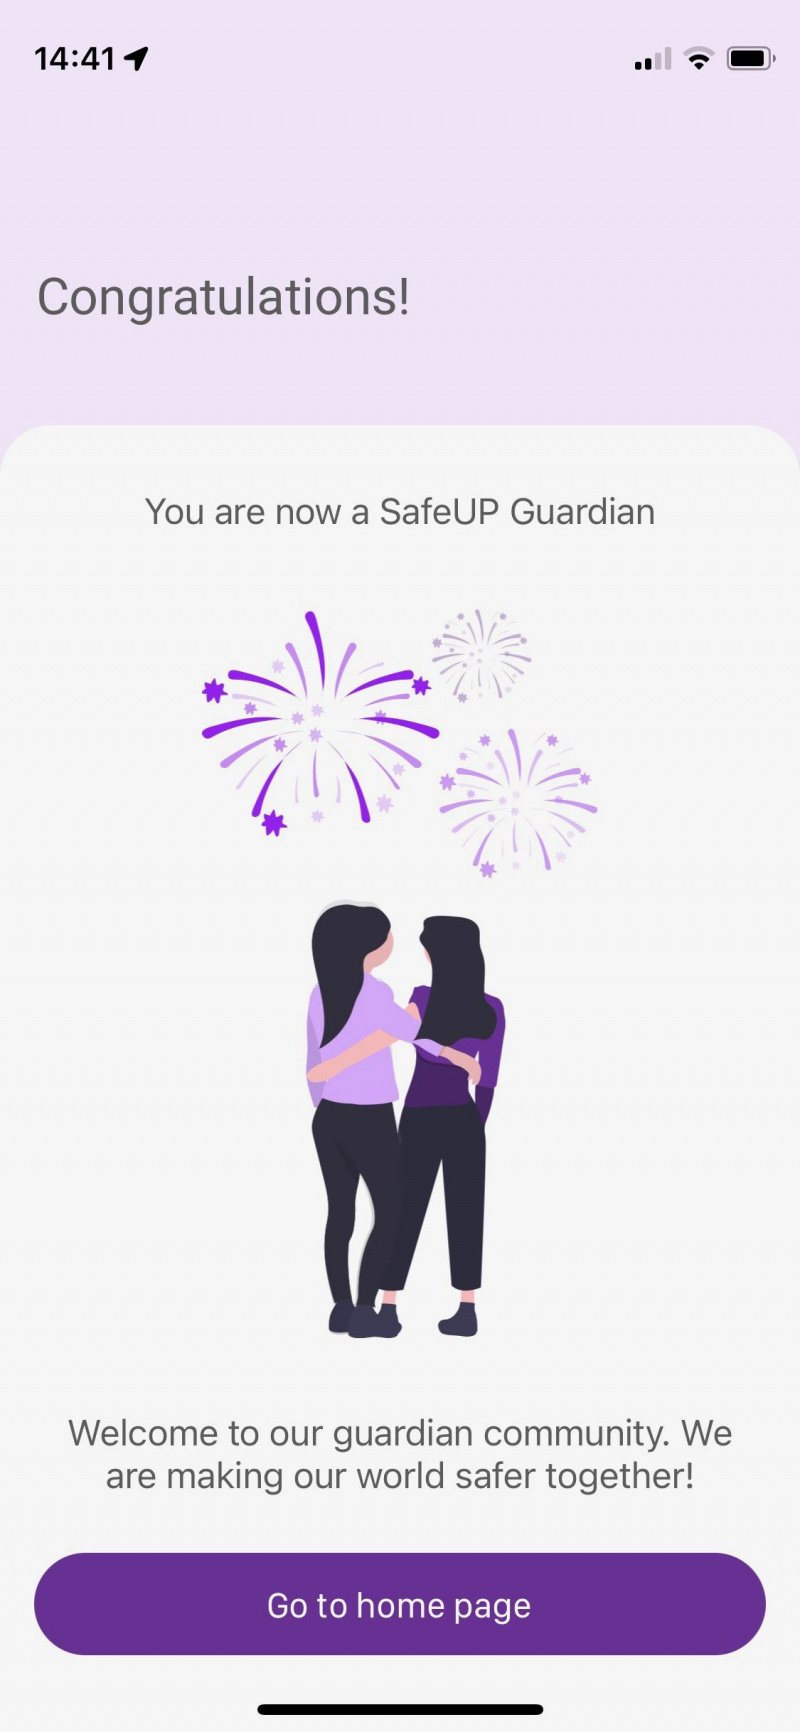   Snímka obrazovky aplikácie SafeUP zobrazujúca dokončené školenie opatrovníka